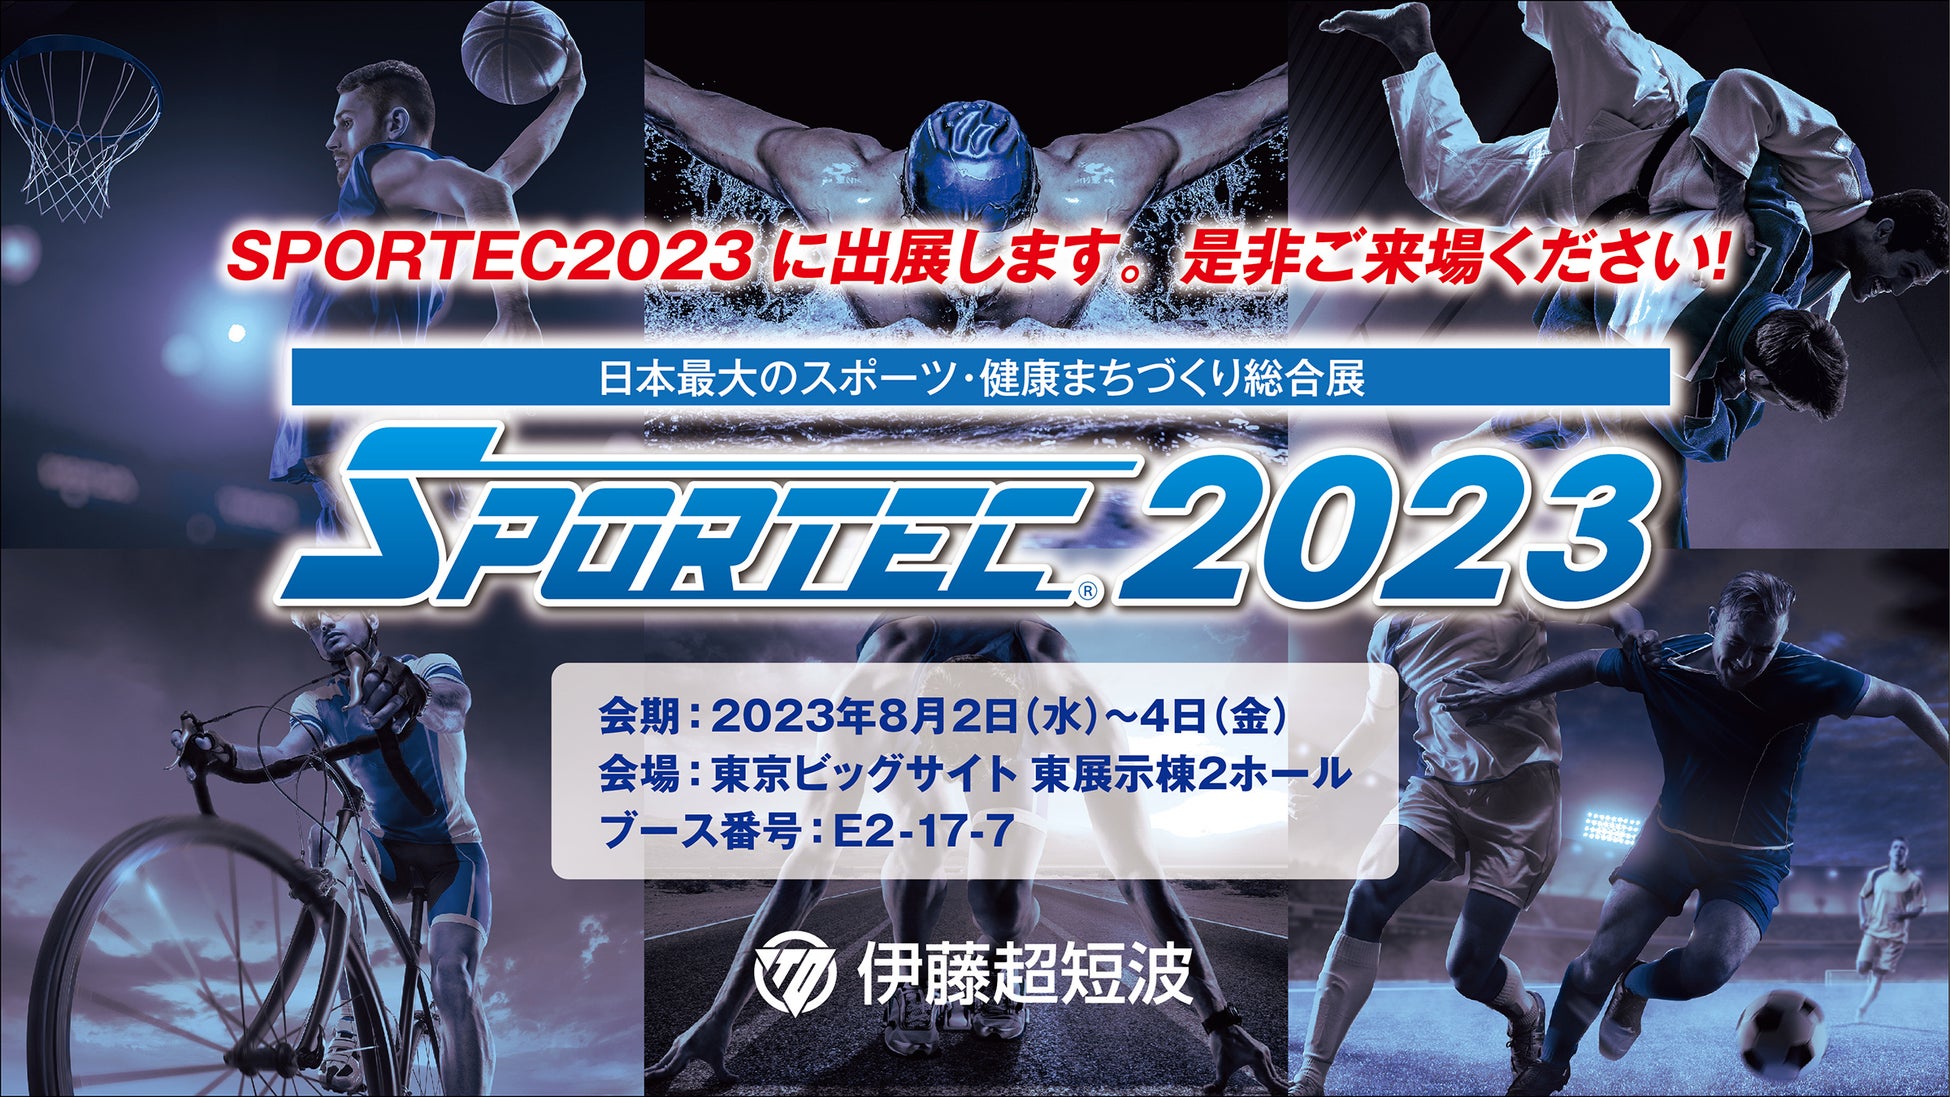 伊藤超短波、日本最大級のスポーツ産業総合展示会「SPORTEC 2023」に出展